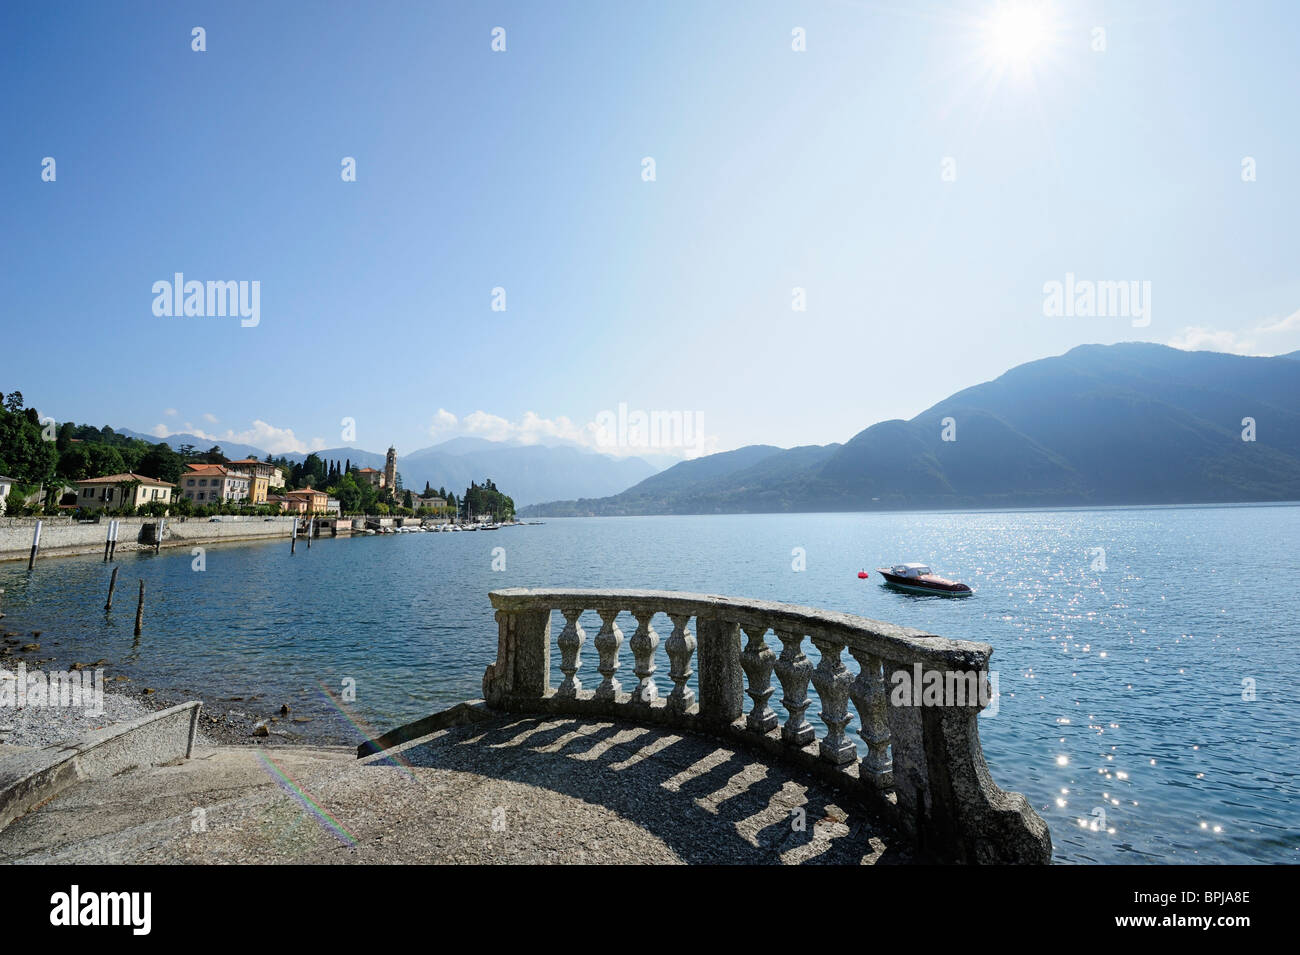 Stone balustrade at Lake Como, Tremezzo, Lombardy, Italy Stock Photo